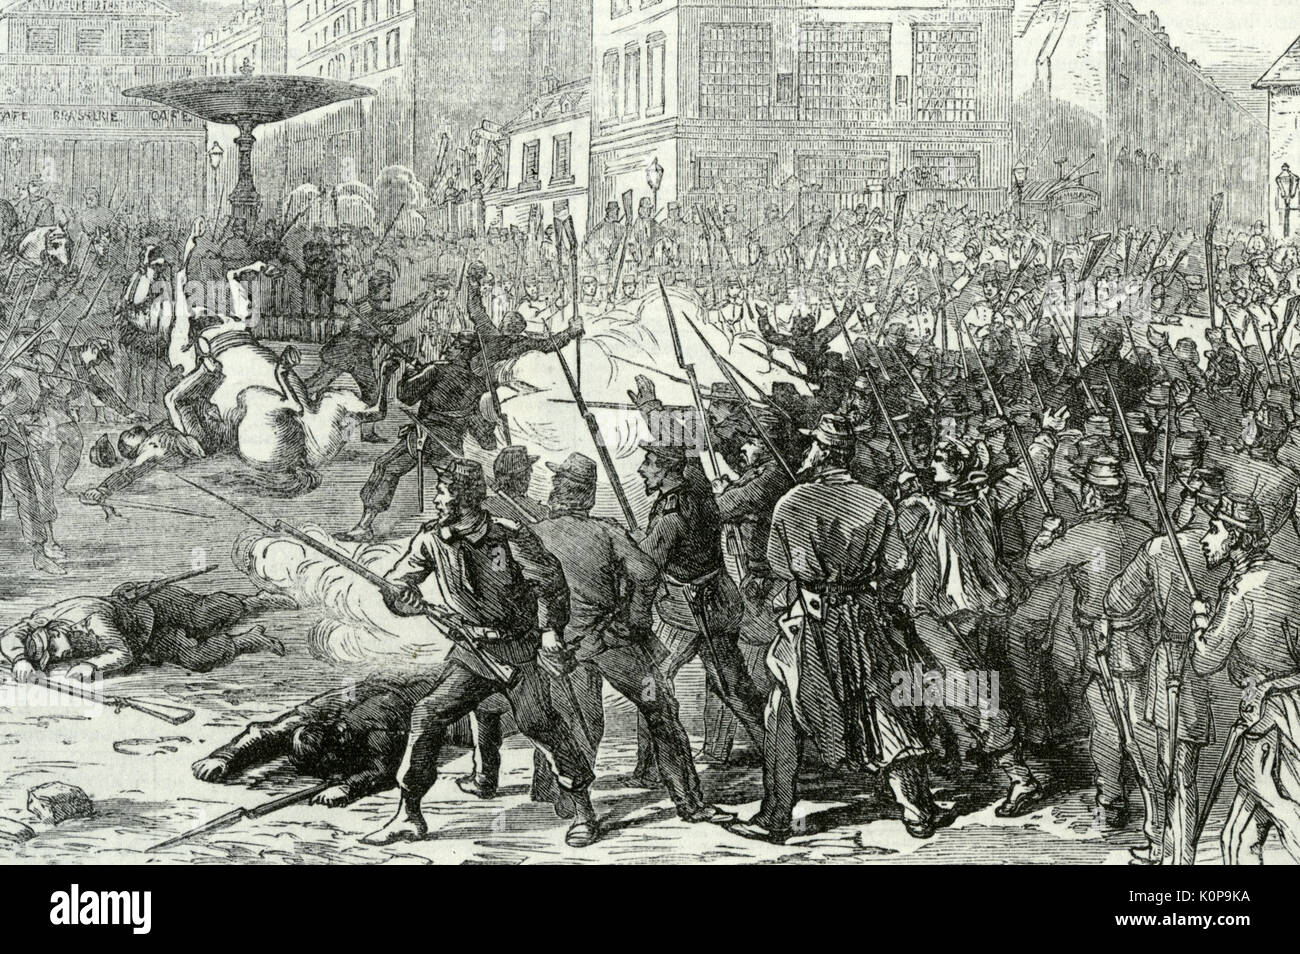 Comuna de París, de marzo a mayo de 1871. Los combates en la Place Pigalle cerca de Sacre Coeur durante la semana sangrienta Mayo 21-22 Foto de stock